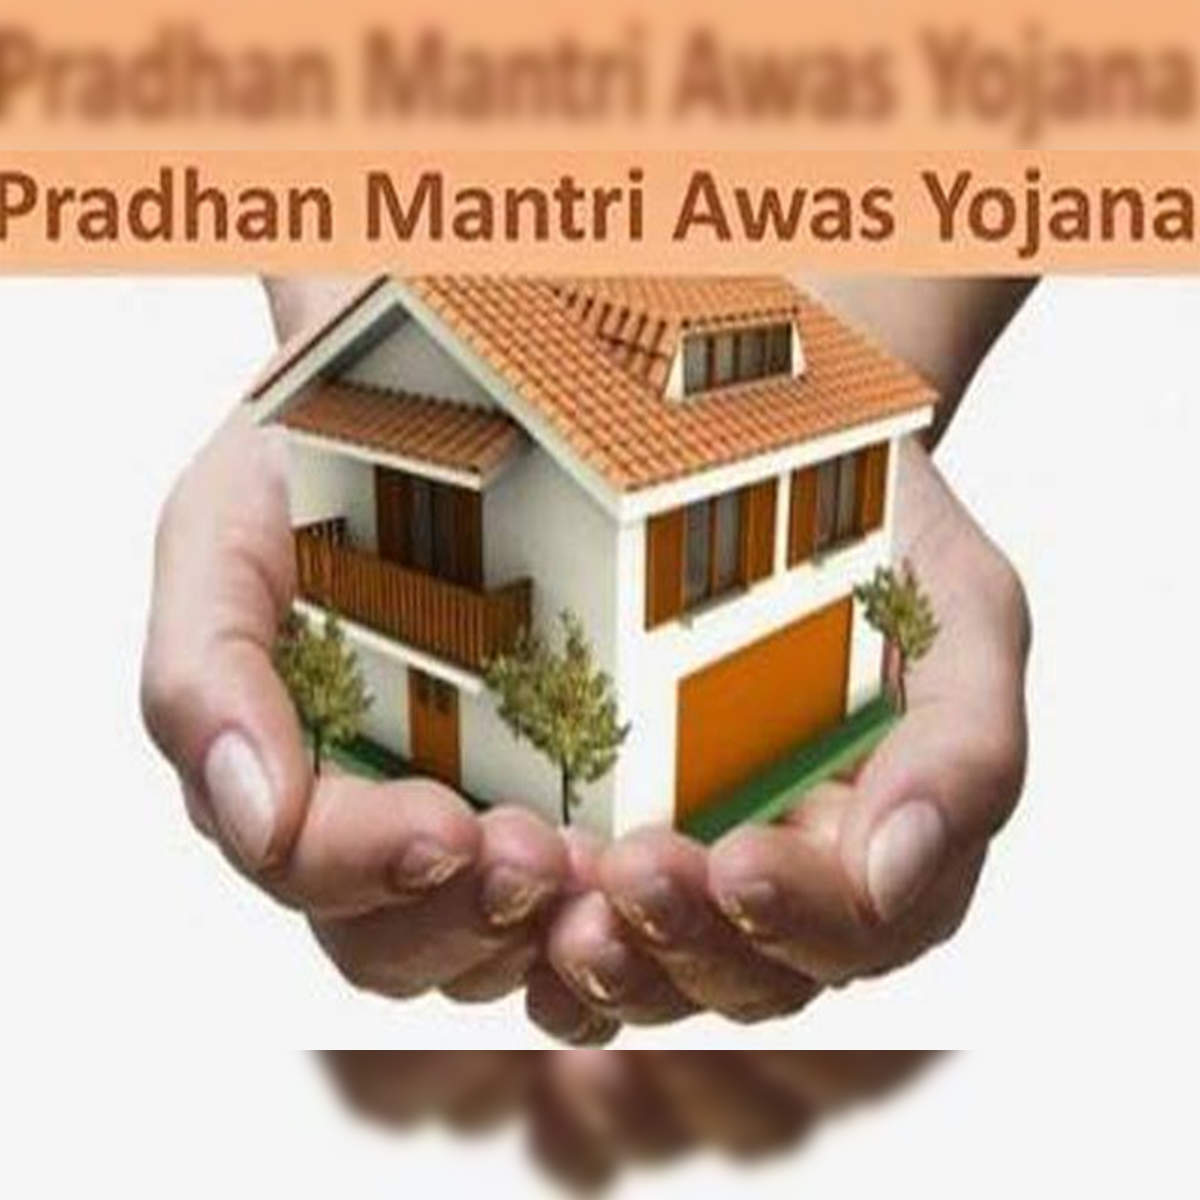 PM Awas Yojana: सुस्ती में फंसी प्रधानमंत्री आवास योजना, 315 आवासों का  निर्माण अधूरा; कहां कितना हुआ काम? देखें रिपोर्ट - Pradhan Mantri Awas  Yojana in Bihar work slow ...